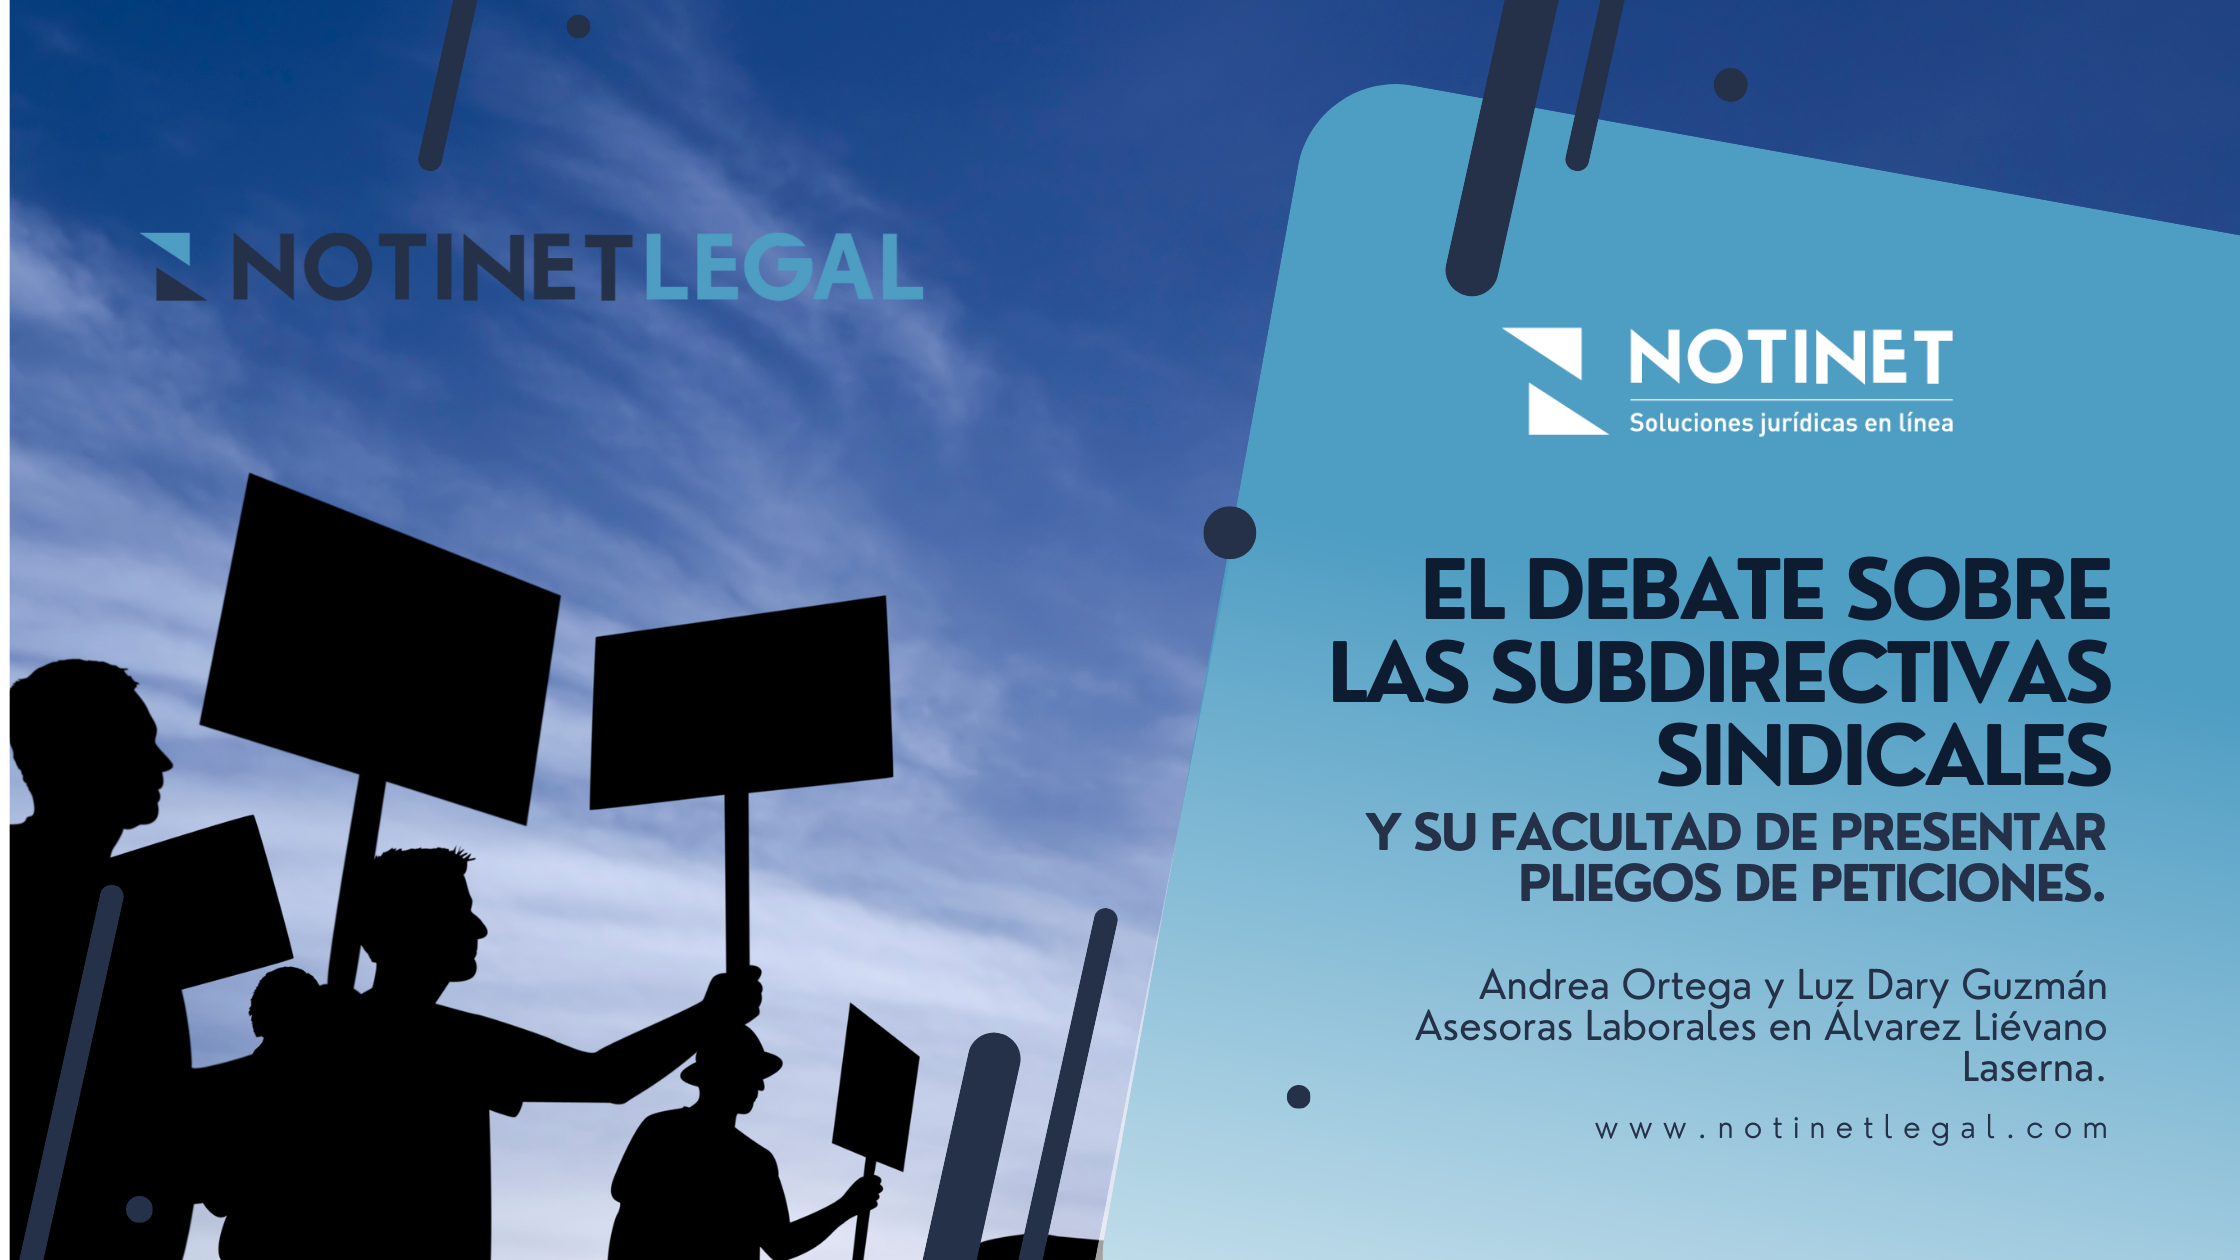 El Debate sobre las Subdirectivas Sindicales y su facultad de presentar Pliegos de Peticiones.